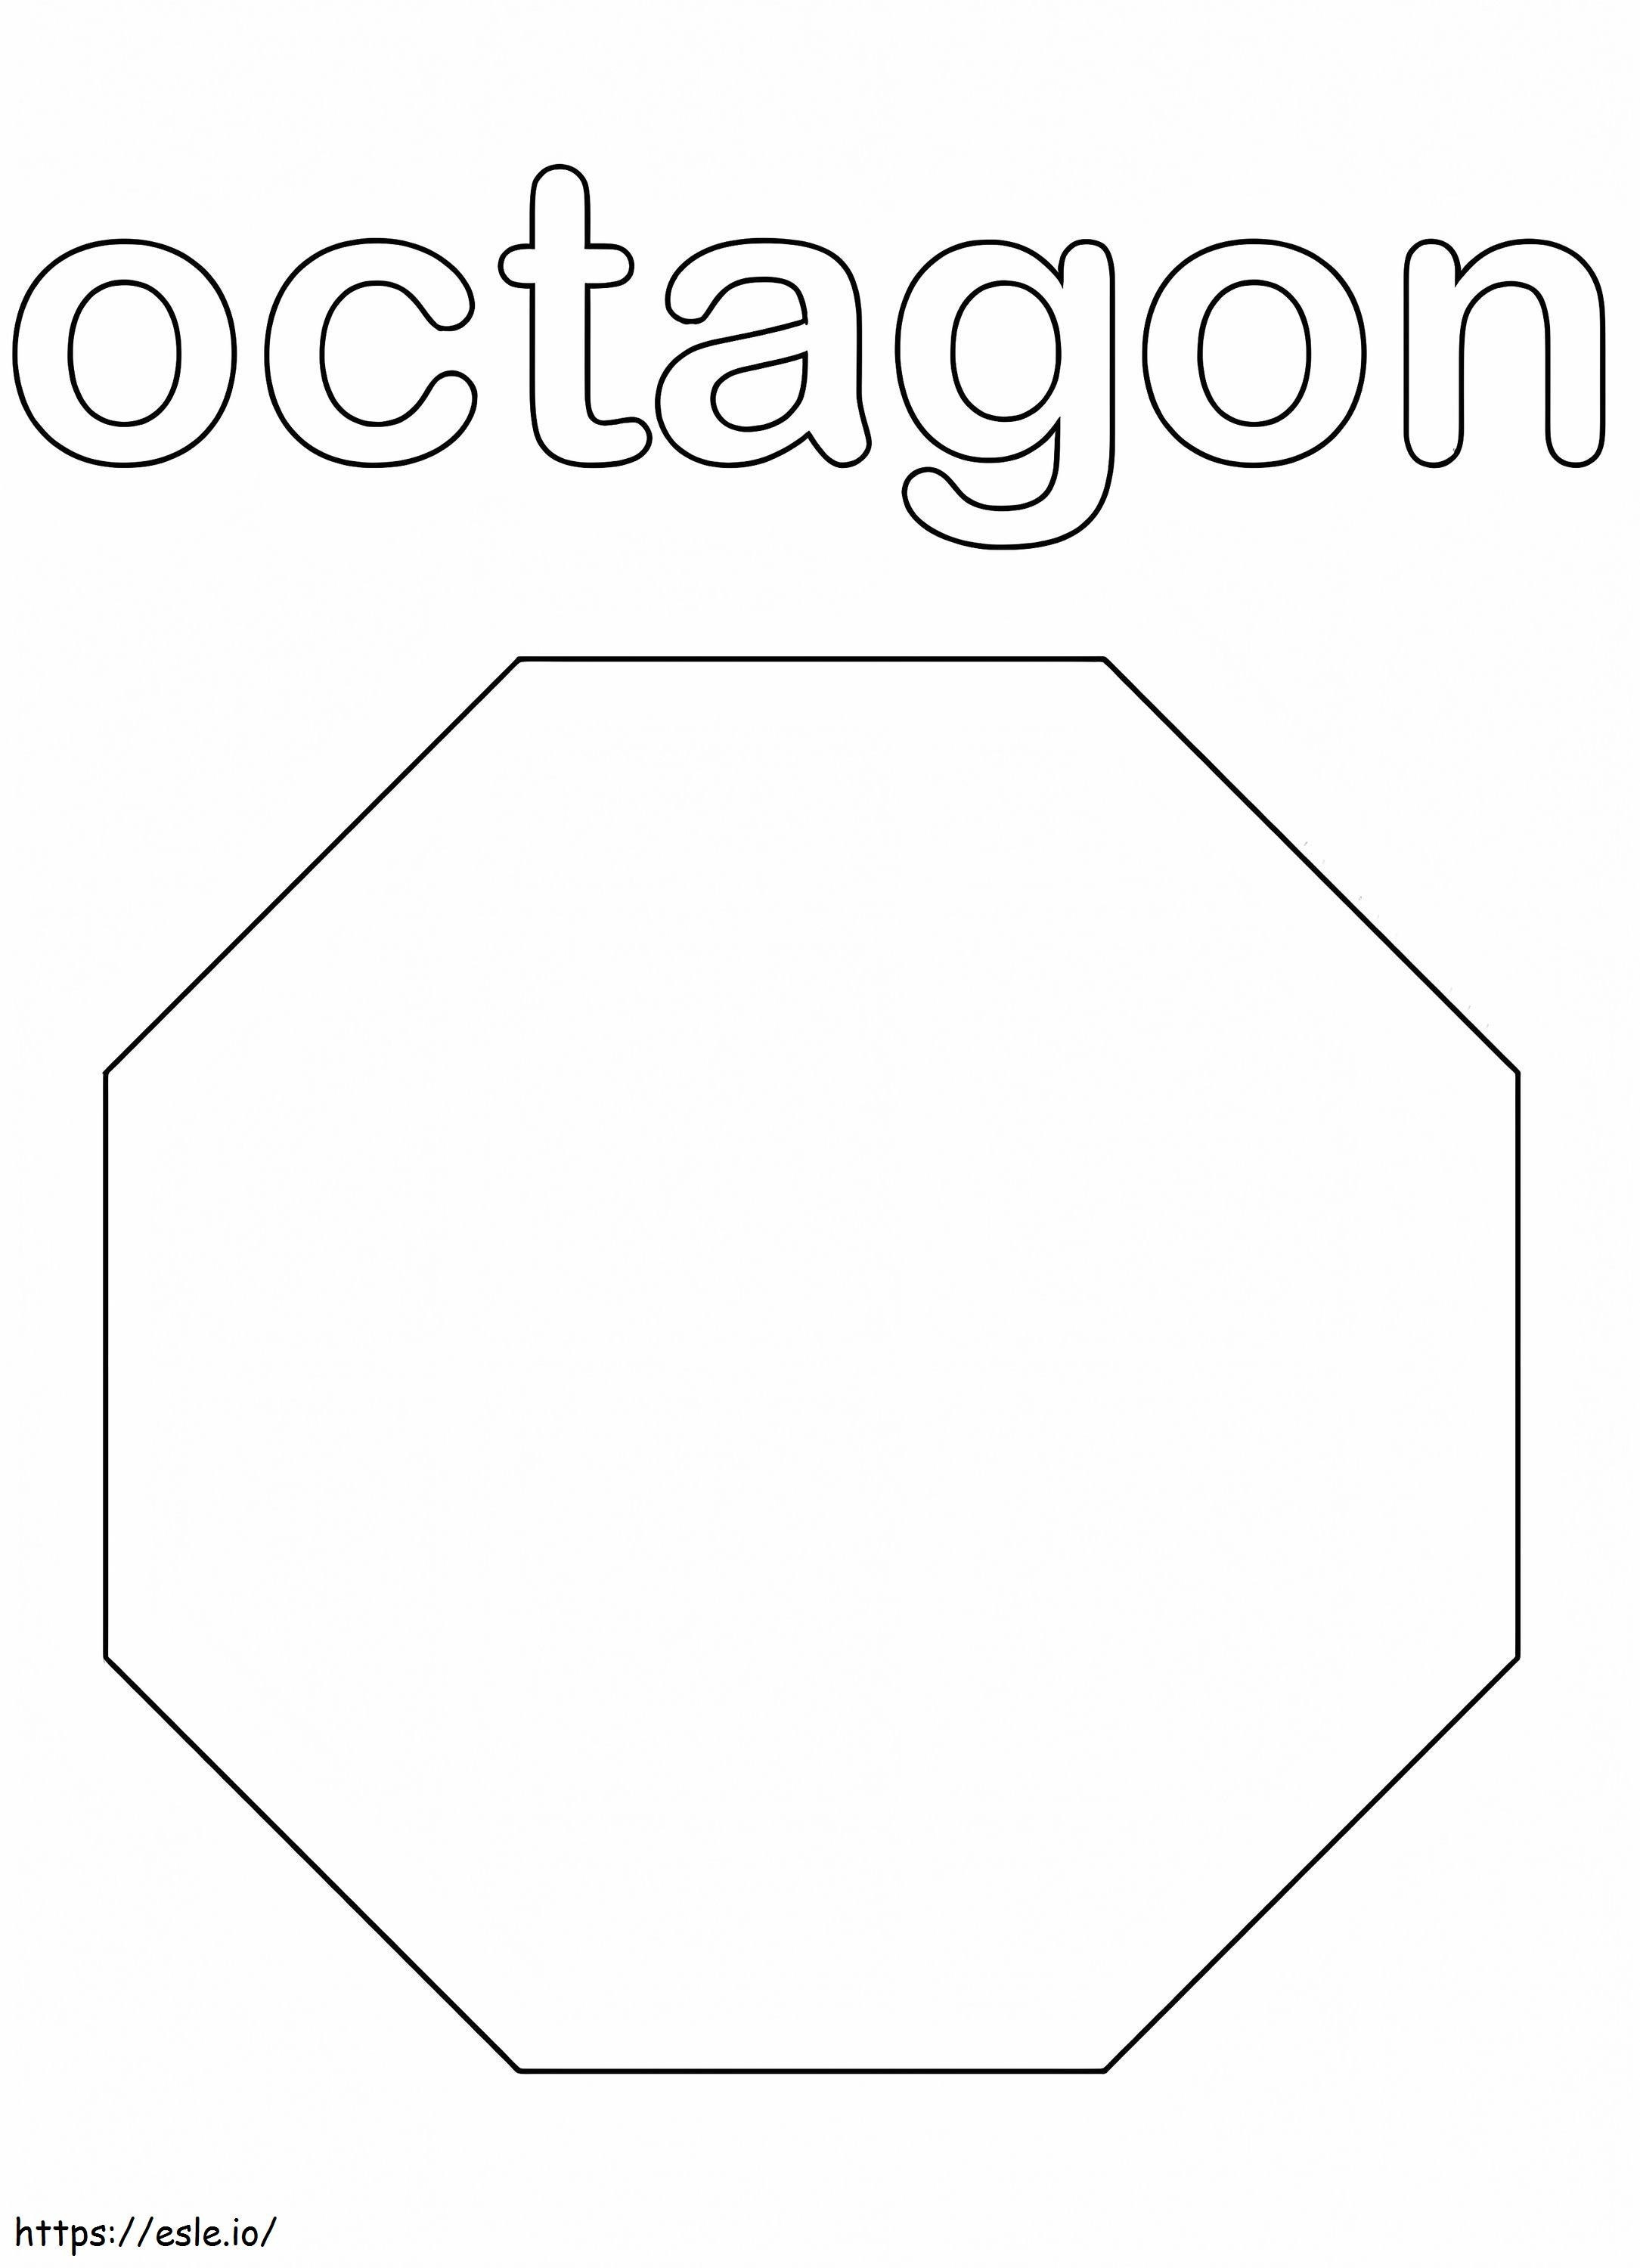 Octágono para colorear